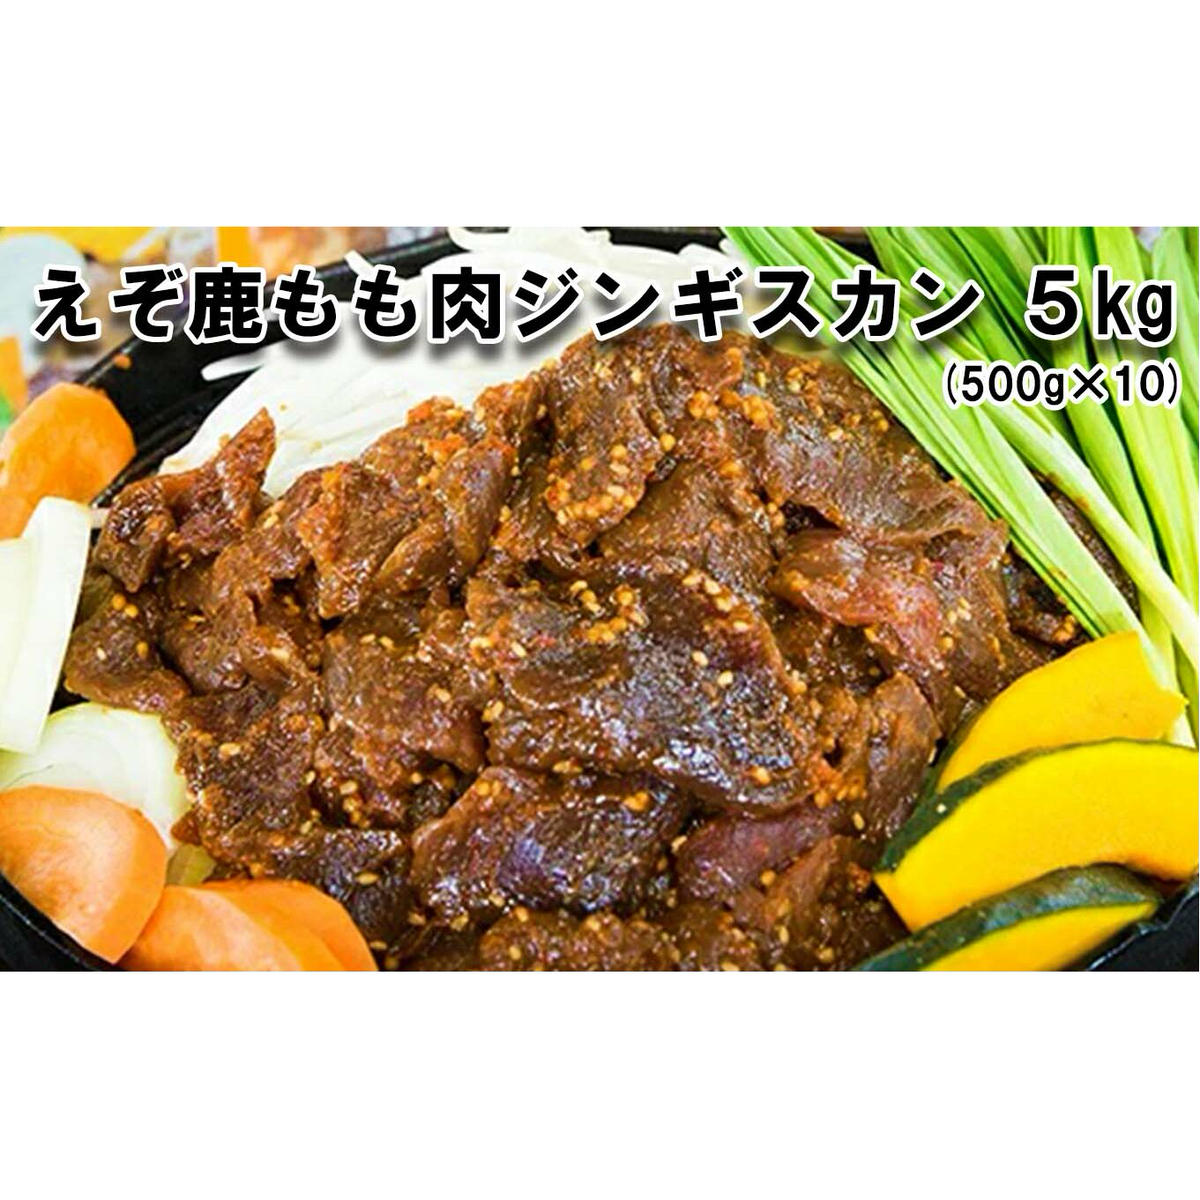 北海道産 えぞ鹿肉 ジンギスカン 5kg (500g×10パック)